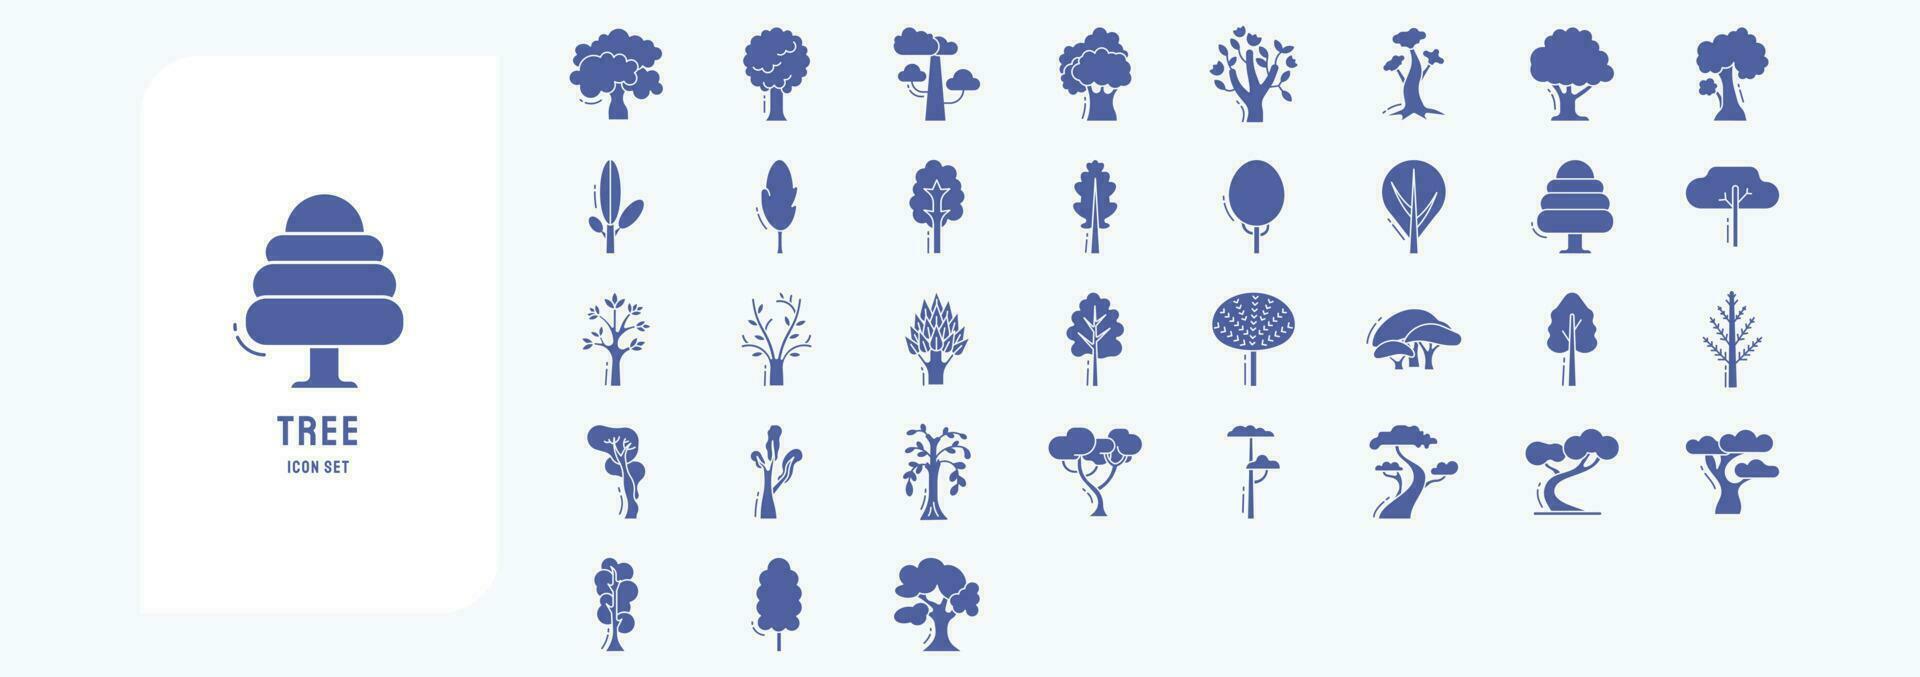 colección de íconos relacionado a árbol, incluso íconos me gusta manzana, langosta, magnolia, arce y más vector